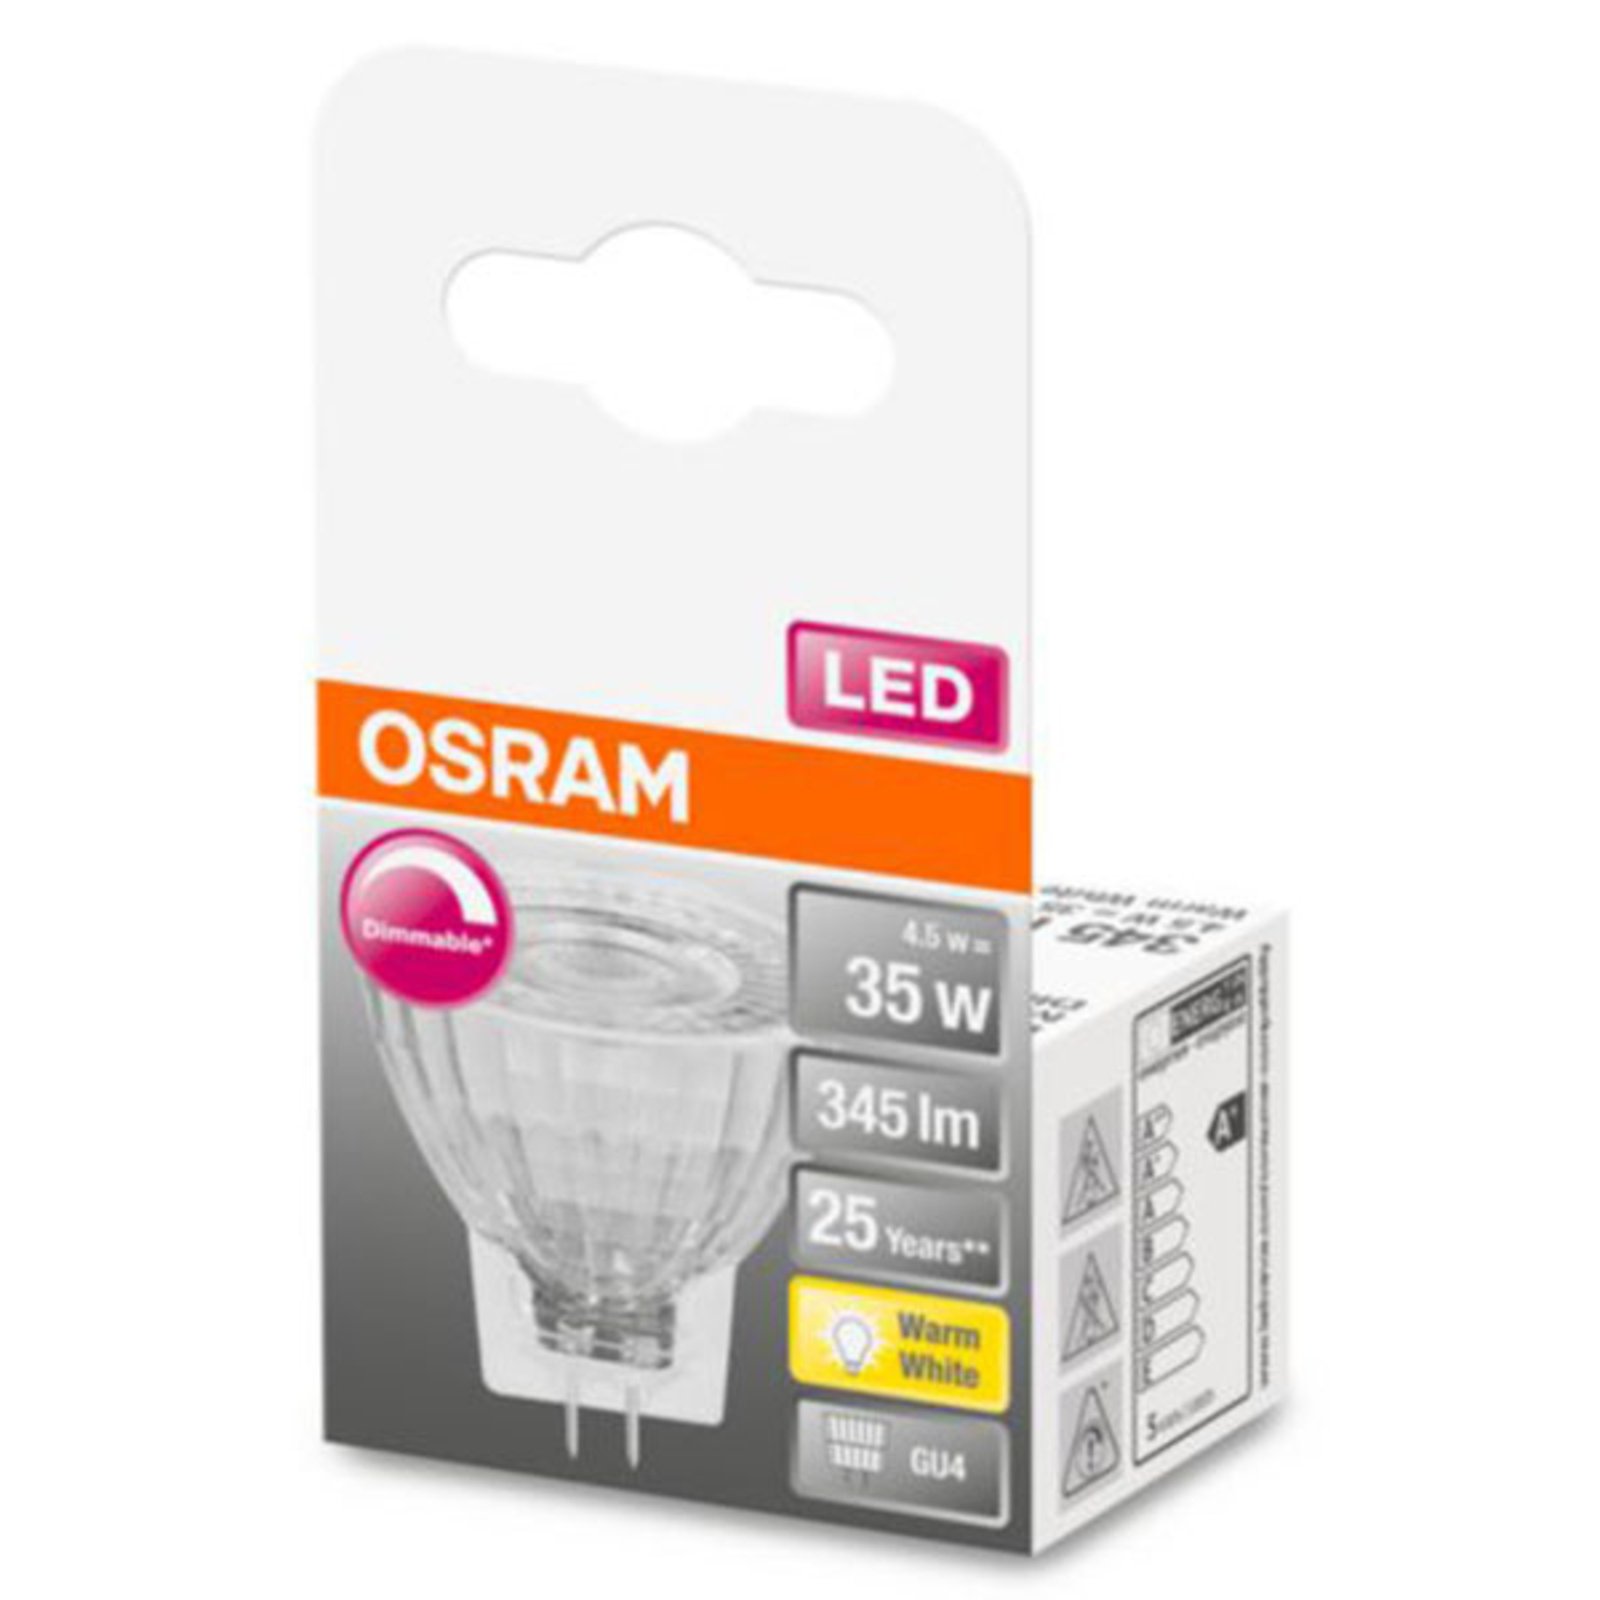 OSRAM reflectora LED GU4 MR11 4,5W 927 36° dim